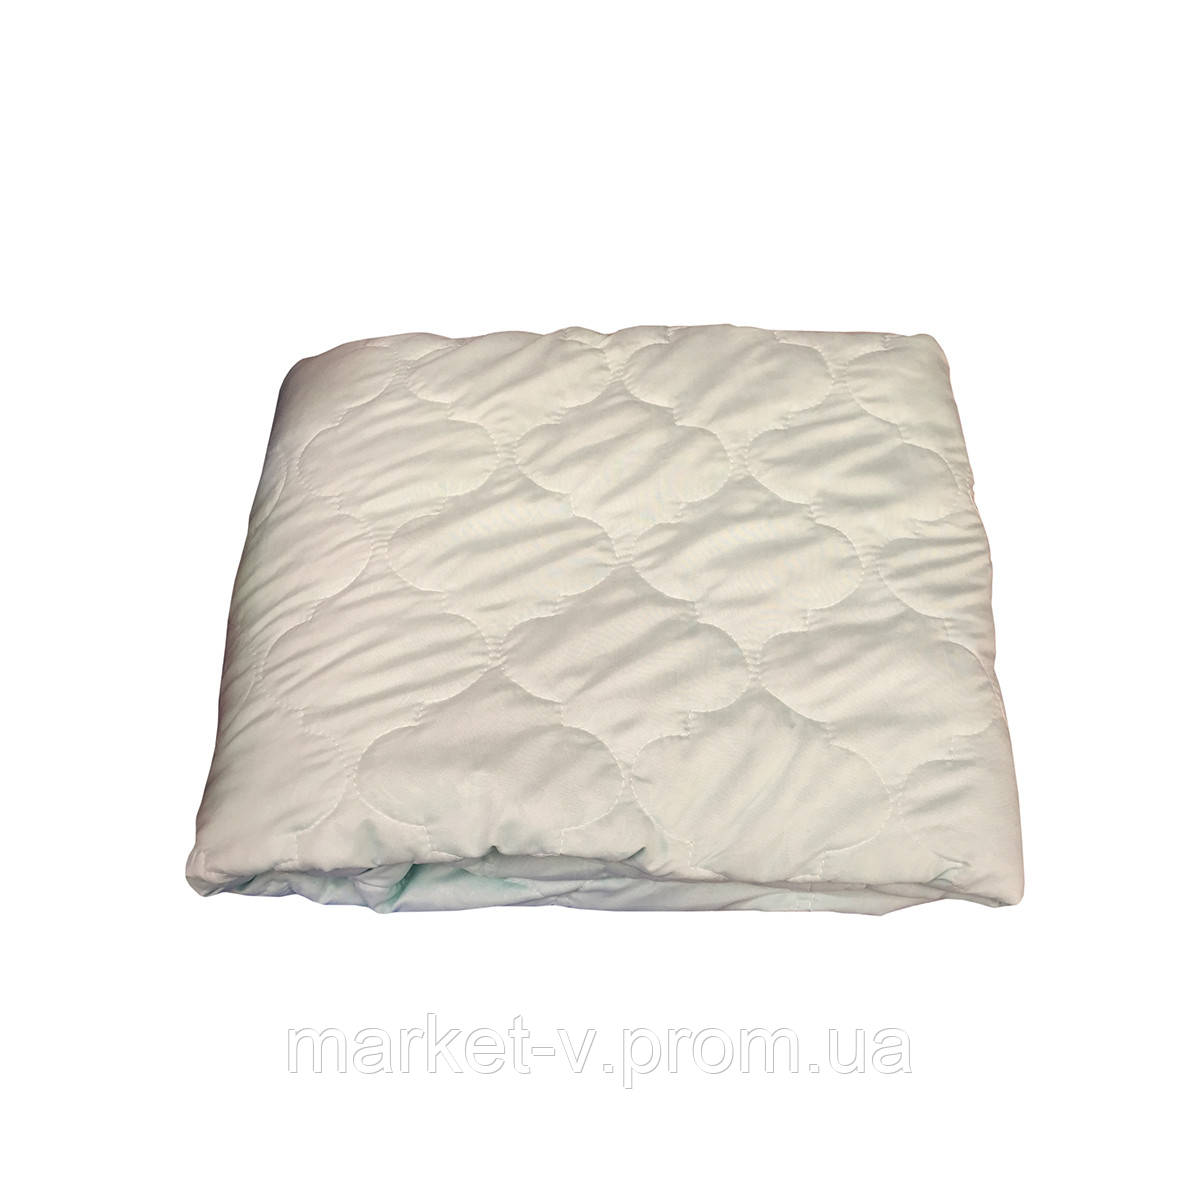 Летнее одеяло покрывало полуторка однотонное Бамбук, 145/205, ткань фибра